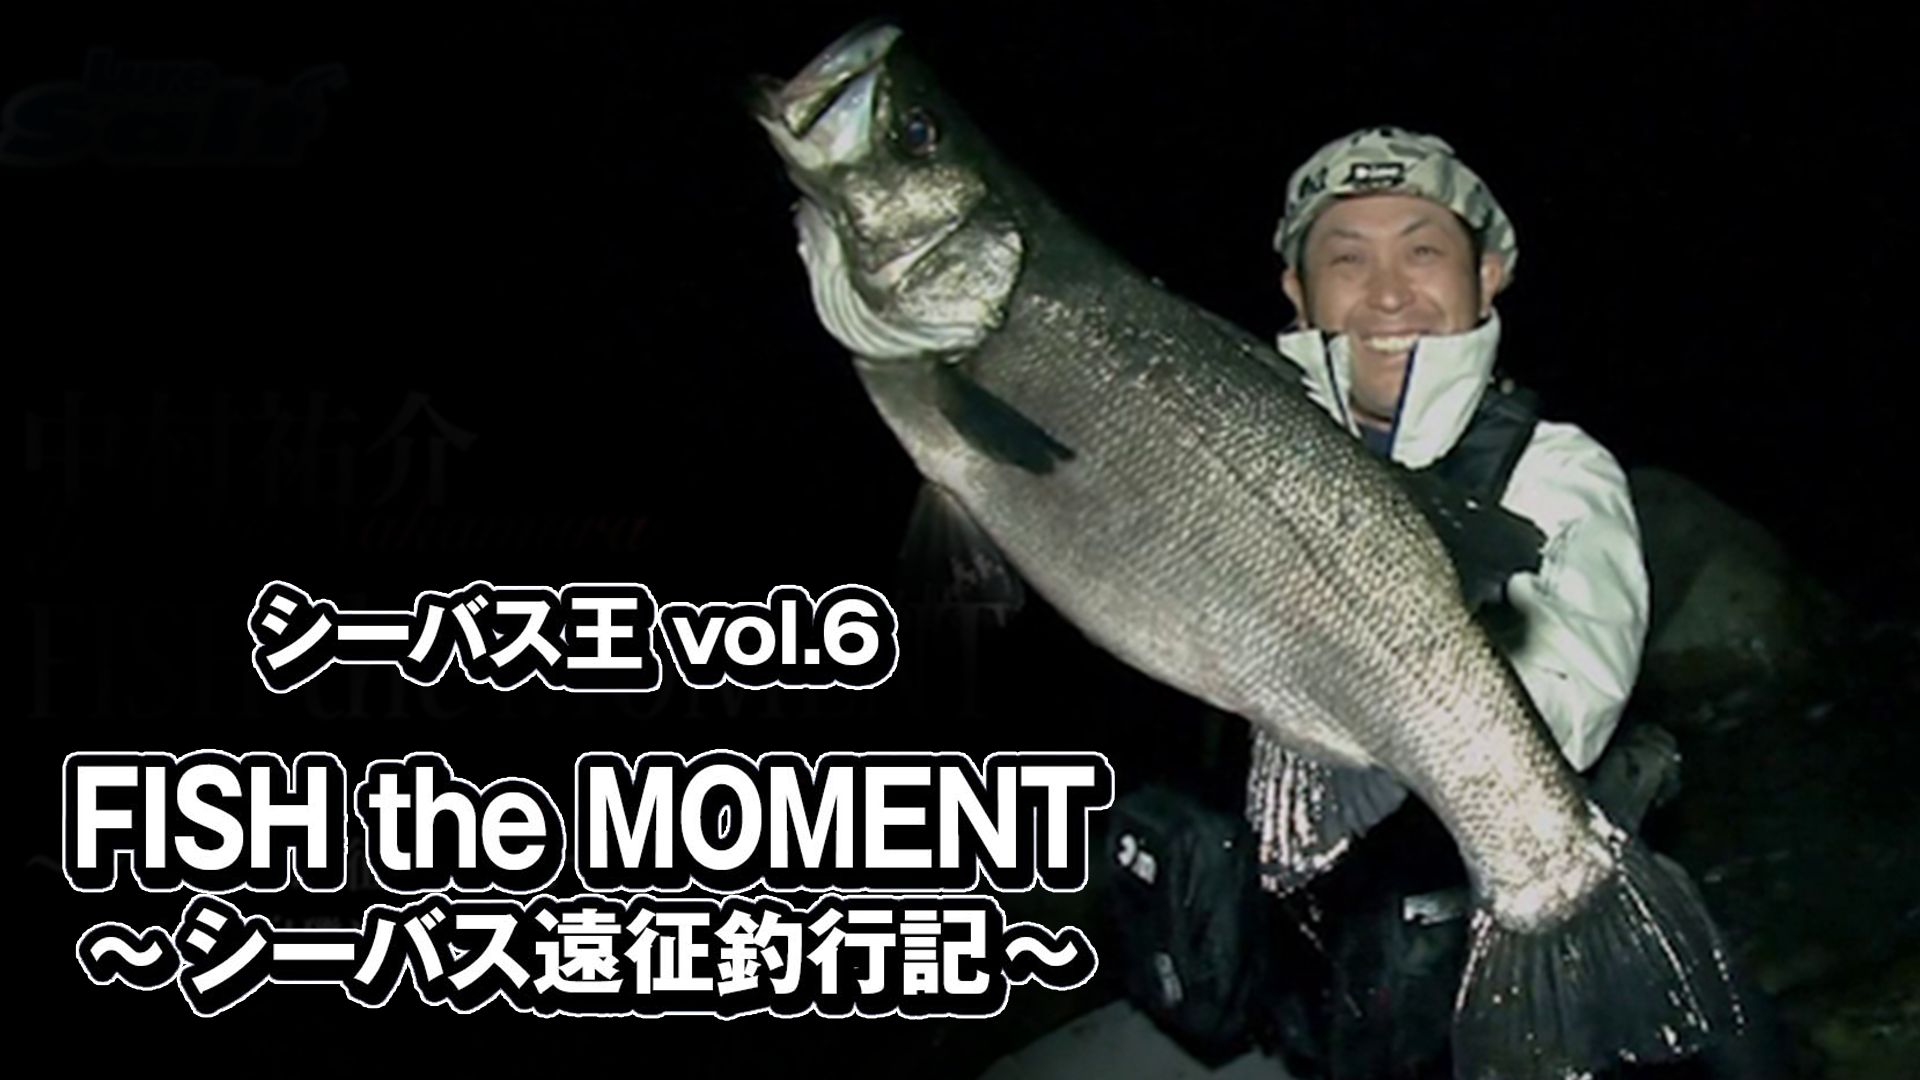 シーバス王vol.6 FISH the MOMENT〜シーバス遠征釣行記〜